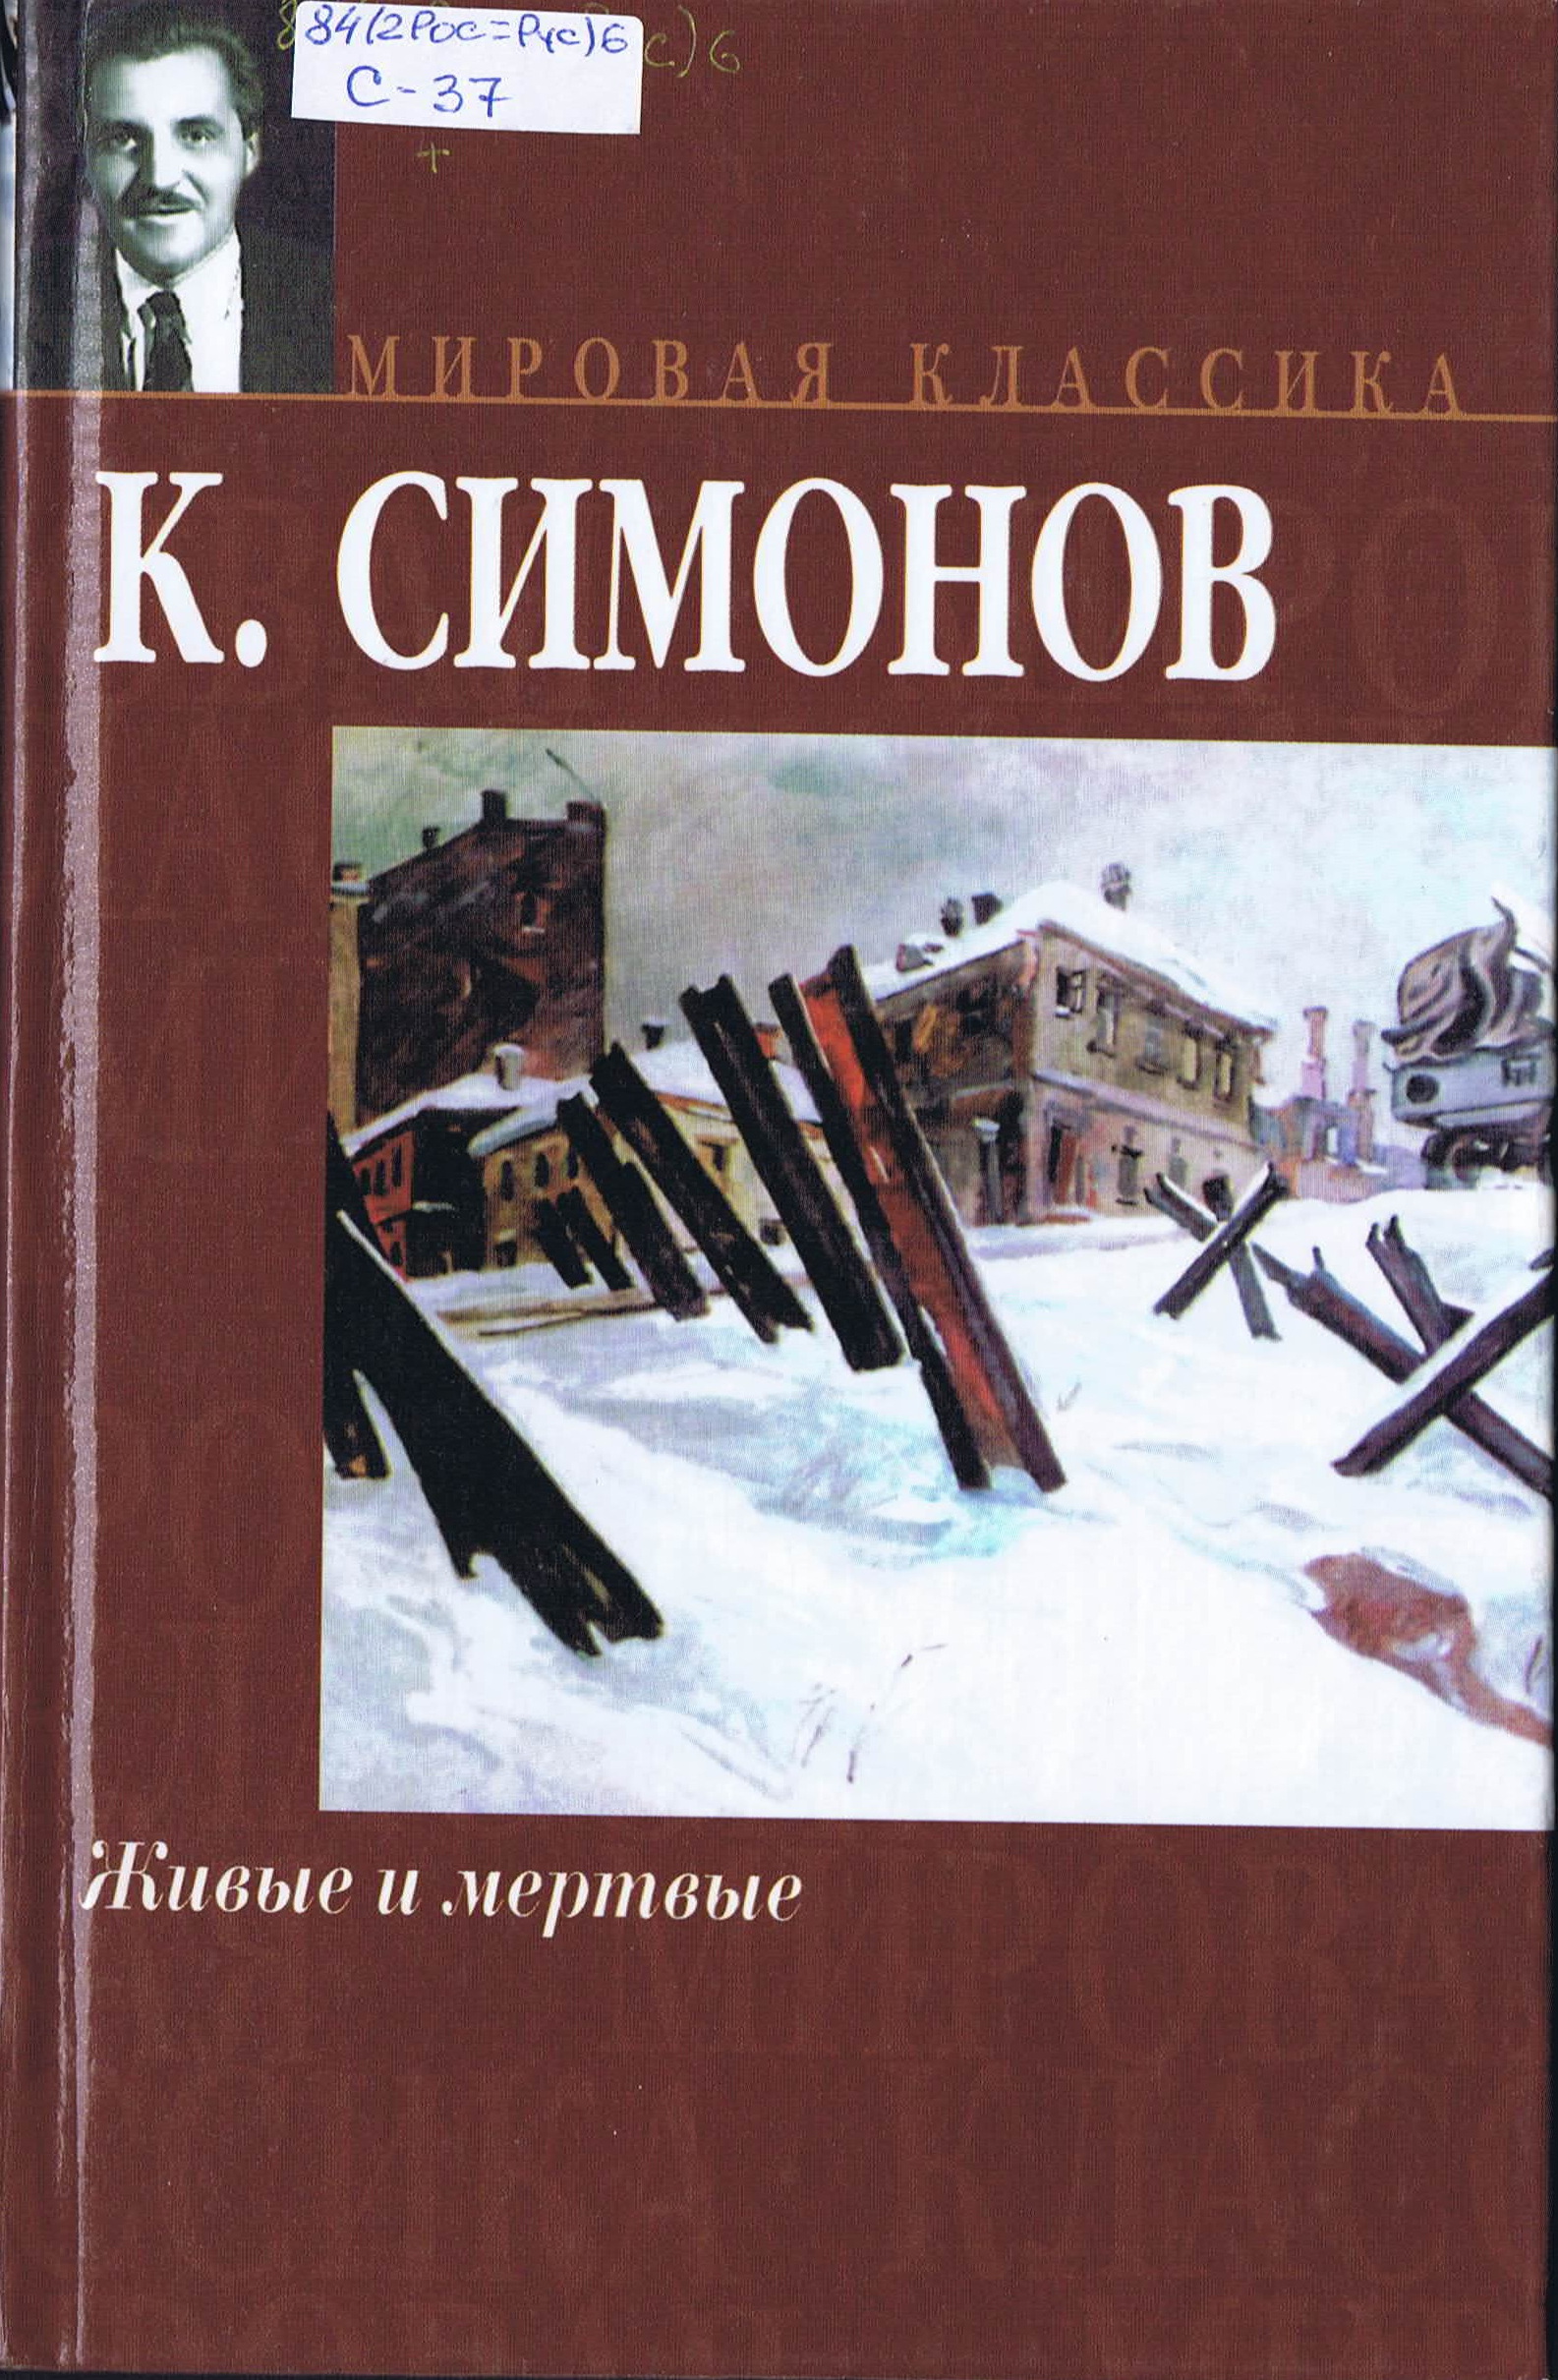 Живые м мертвые. Симонов живые и мёртвые книга1987. Симонов к.м. "живые и мертвые".